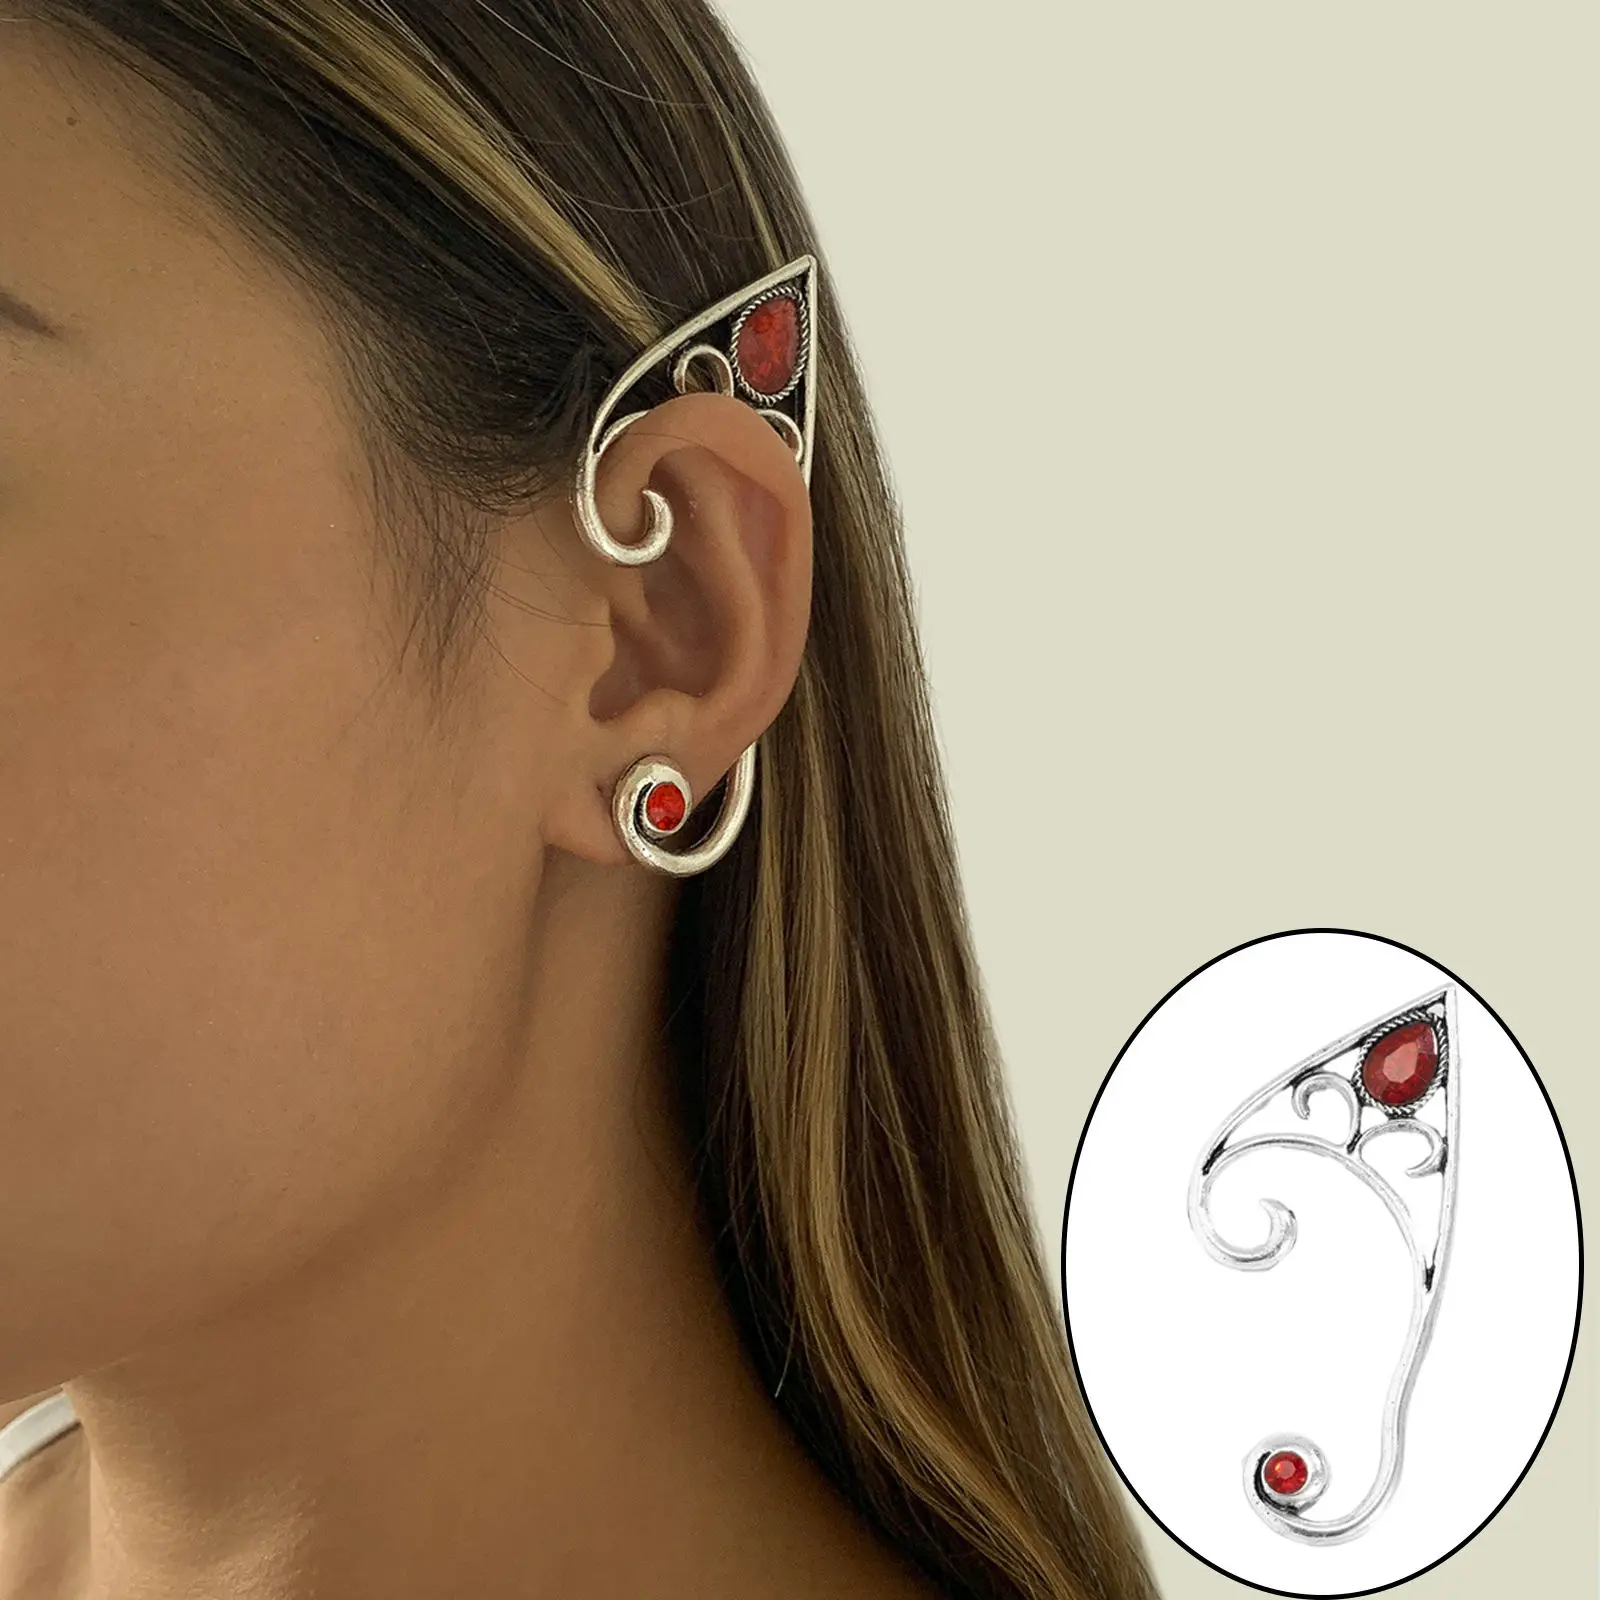 Alloy Fashion Ear Cuff Ear Clip Earring Jewelry Silver Handcraft Single